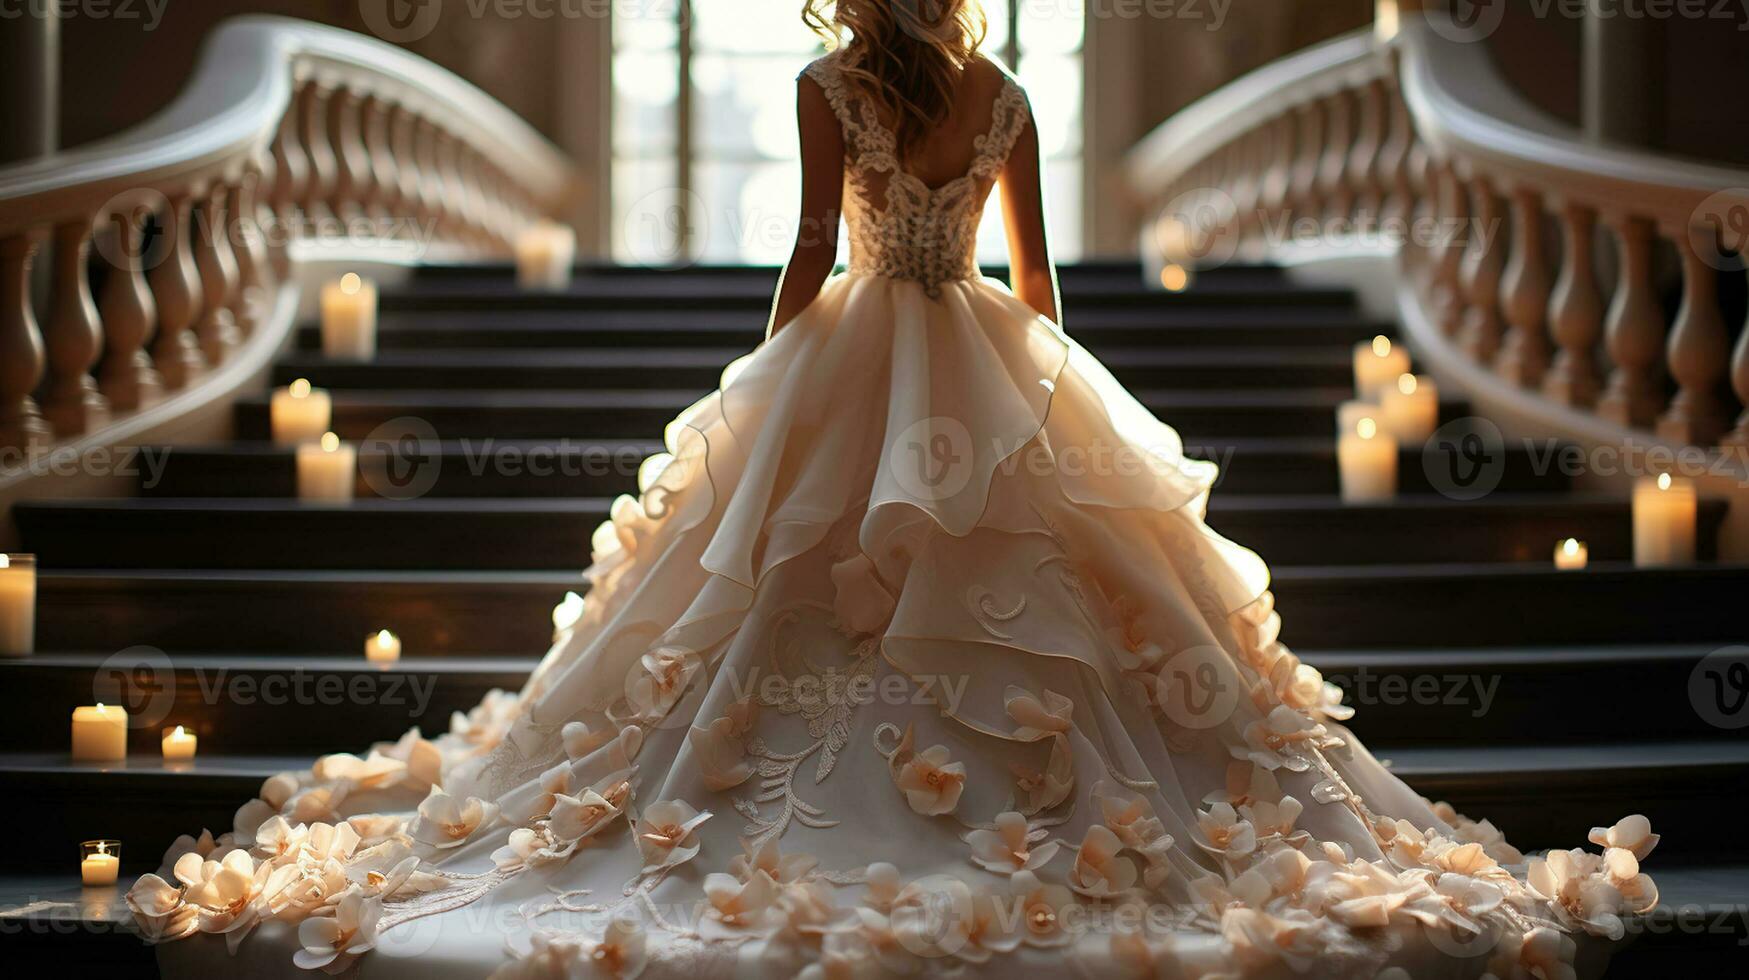 escalier à romance, captivant des moments de une la mariée au milieu de vacillant bougies photo